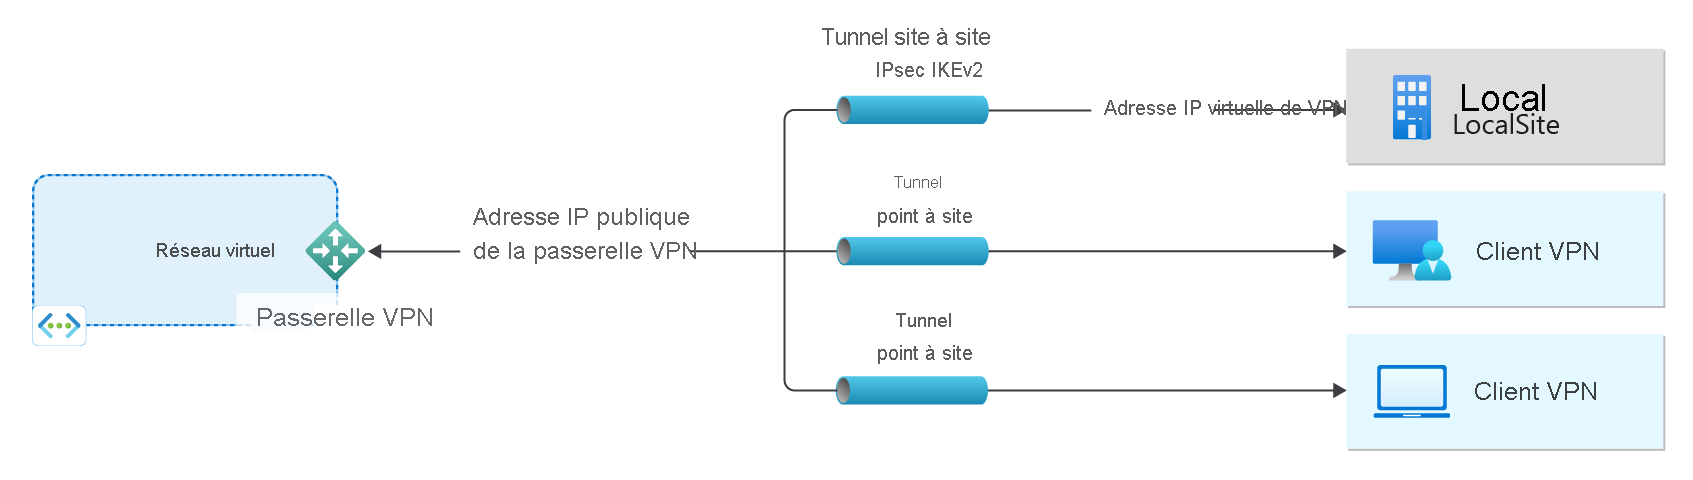 Diagramme illustrant un réseau virtuel et une passerelle VPN.